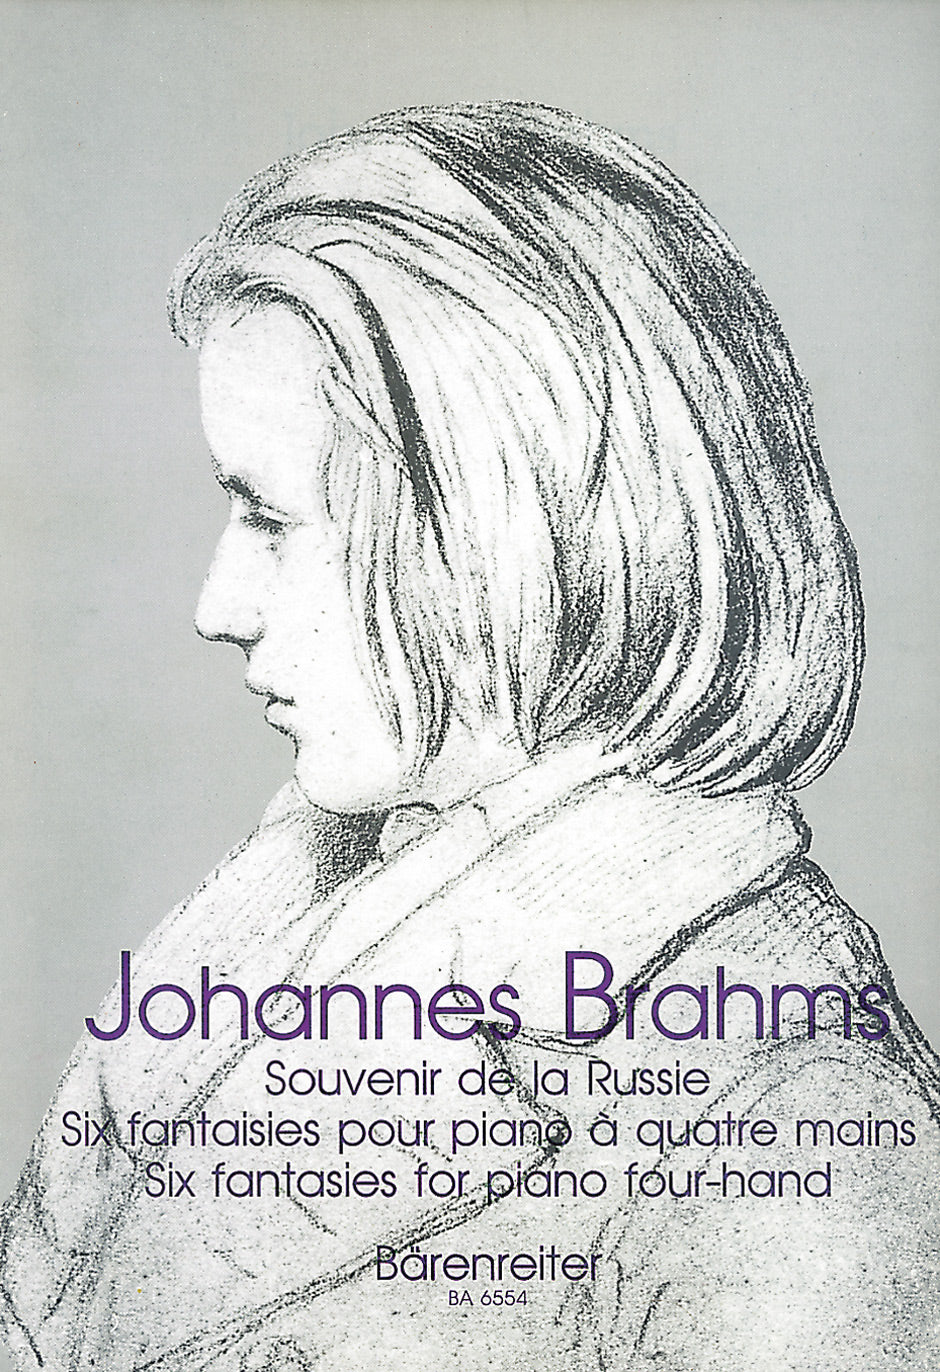 Brahms: Souvenir de la Russie